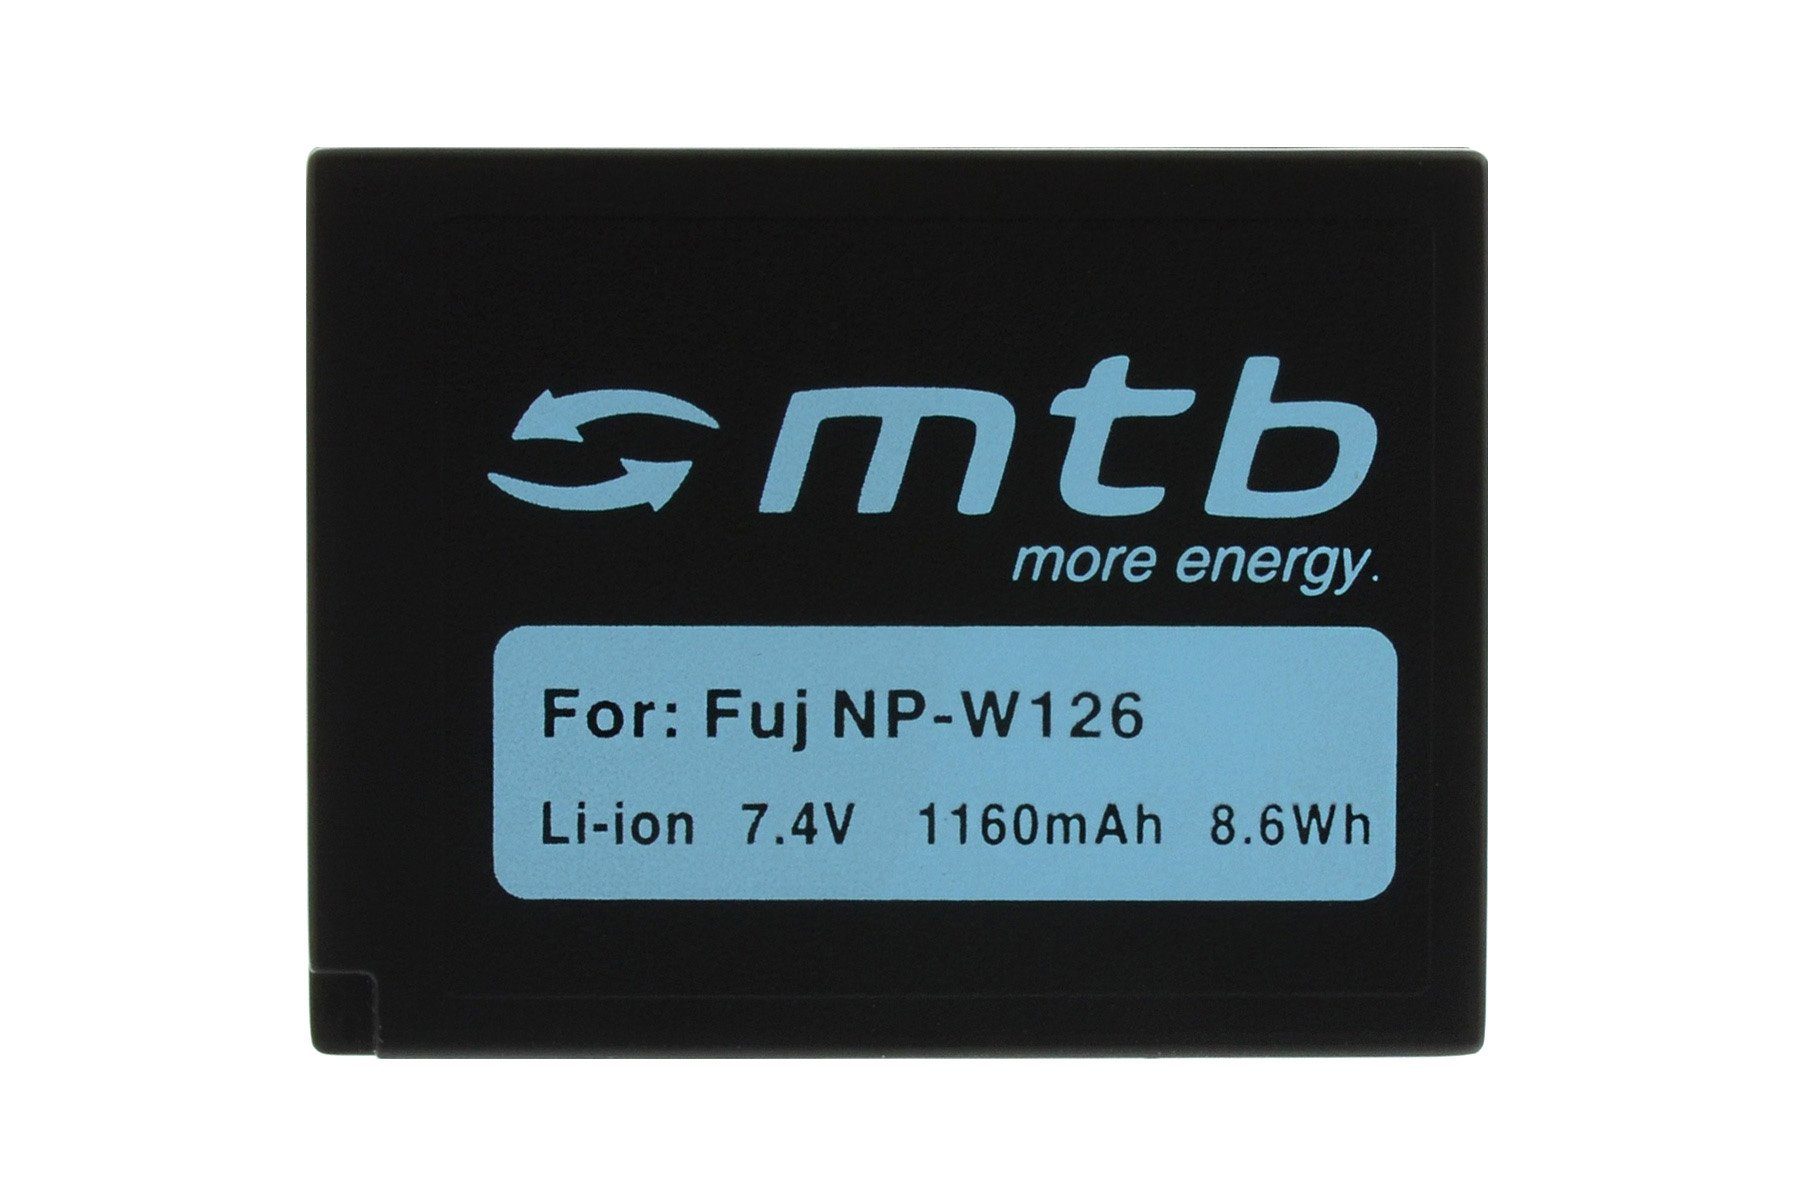 NP-W126 mAh HS30EXR, X-T1 kompatibel Li-Ion] passend X-A1, Finepix HS33EXR, Fuji 1160 X-E2, V), Fuji - Fujifilm X-Pro1, Kamera-Akku //… X-M1, Fujifilm HS50EXR für: // X-E1, Fuji (7,4 mit mtb Akku-Typ // energy more [BAT-350